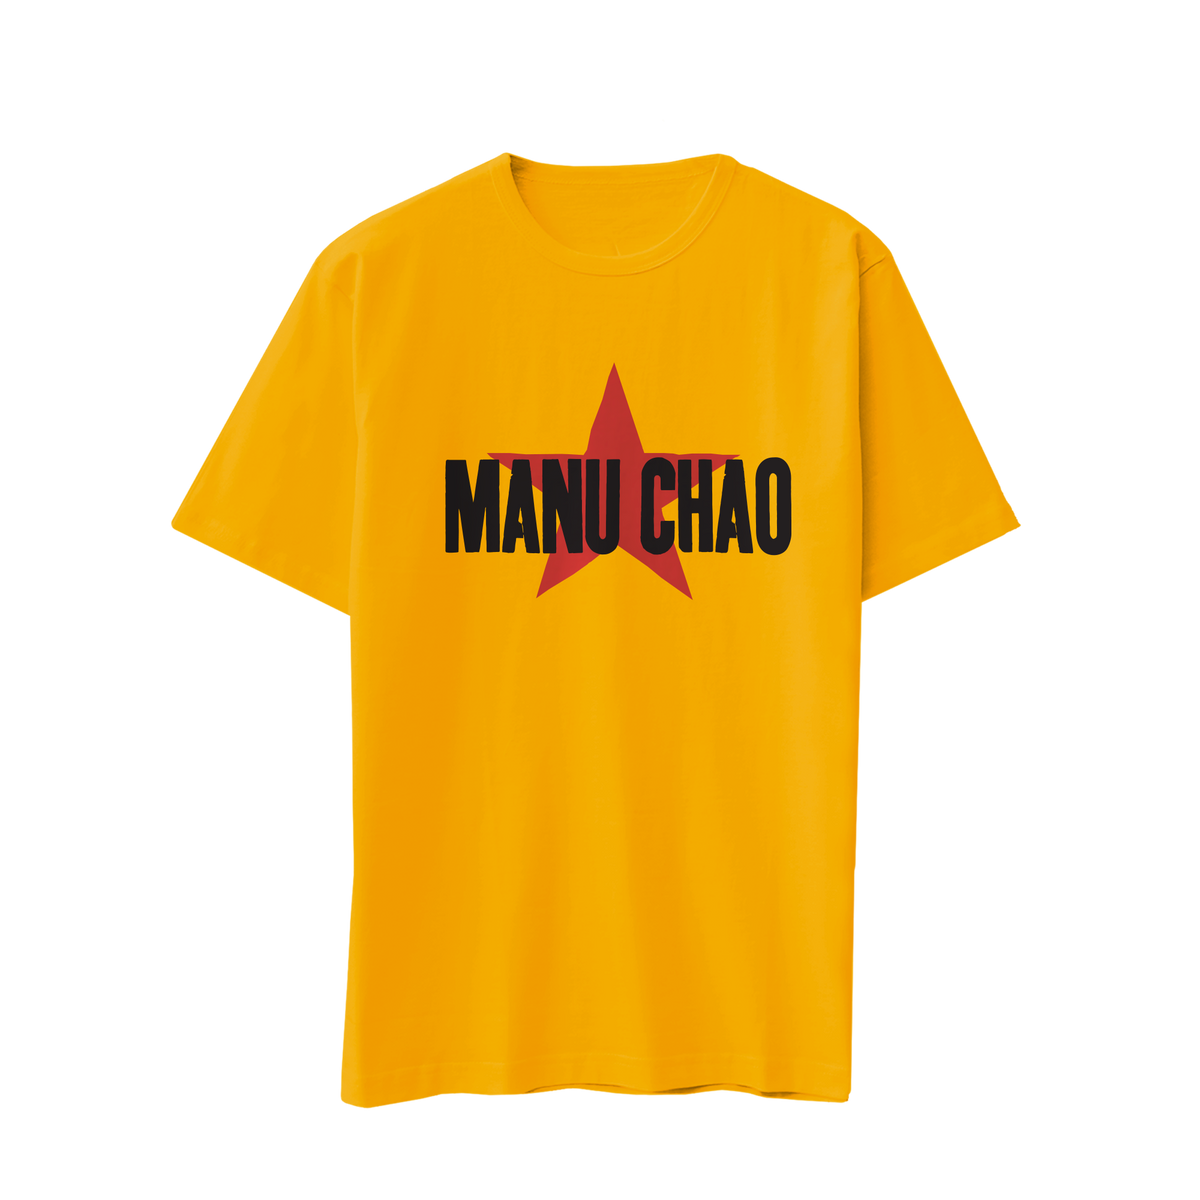 "Manu Chao" T-shirt